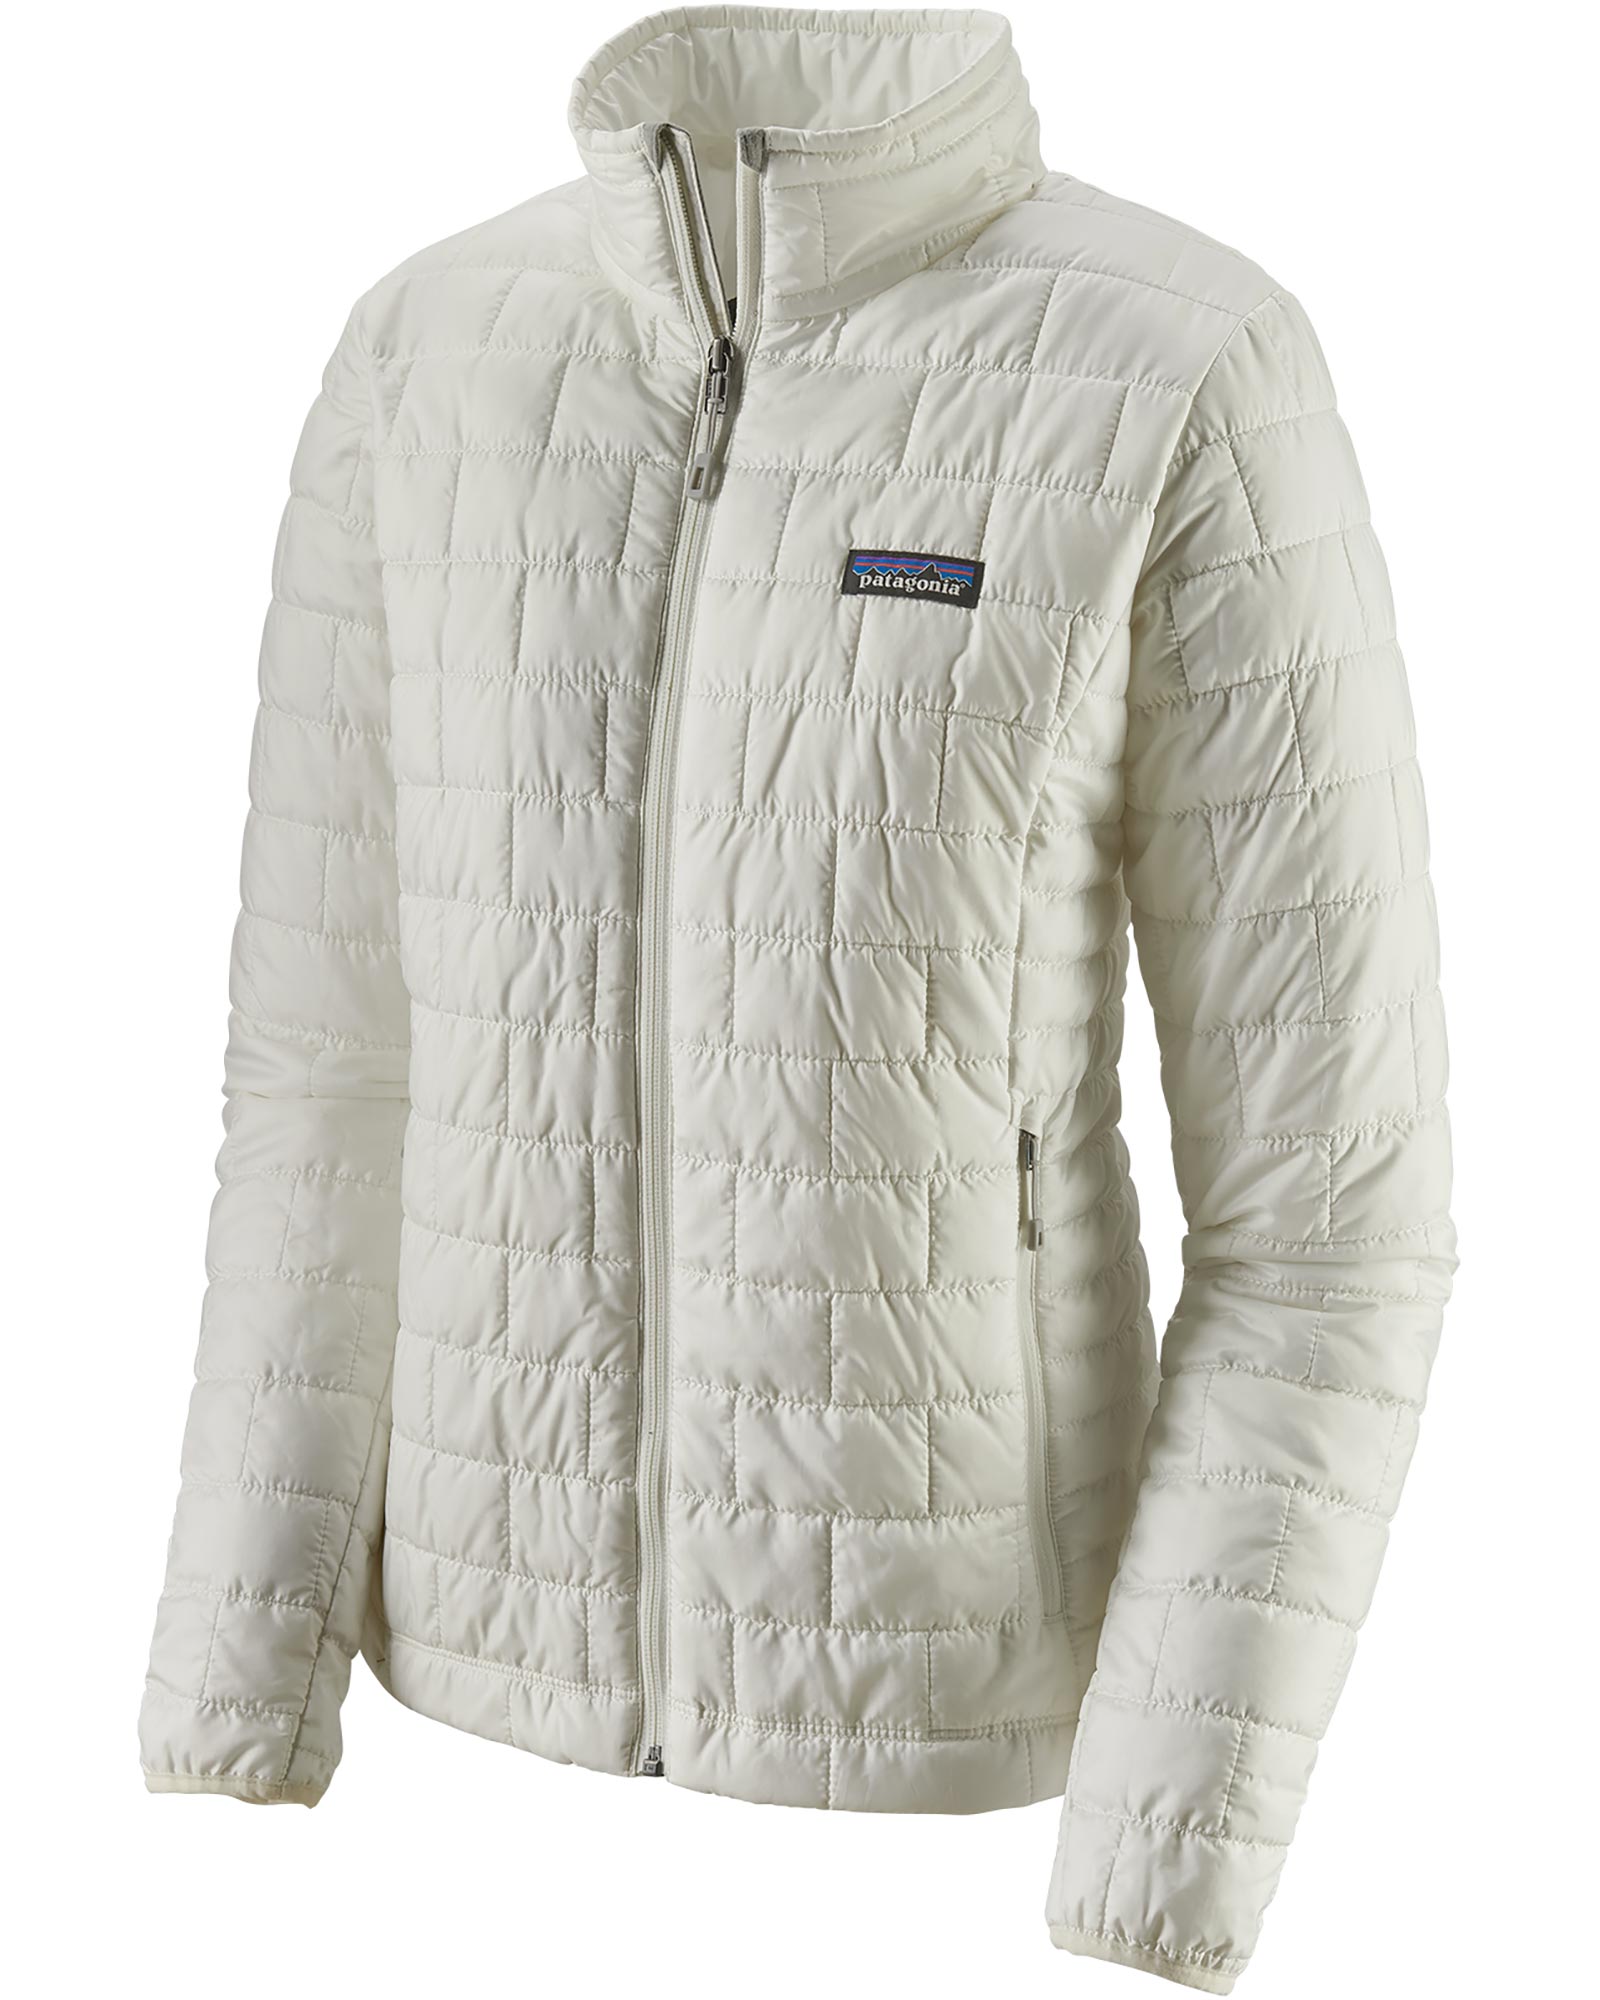 Patagonia Nano Puff Women’s Insulated Jacket - Birch White S